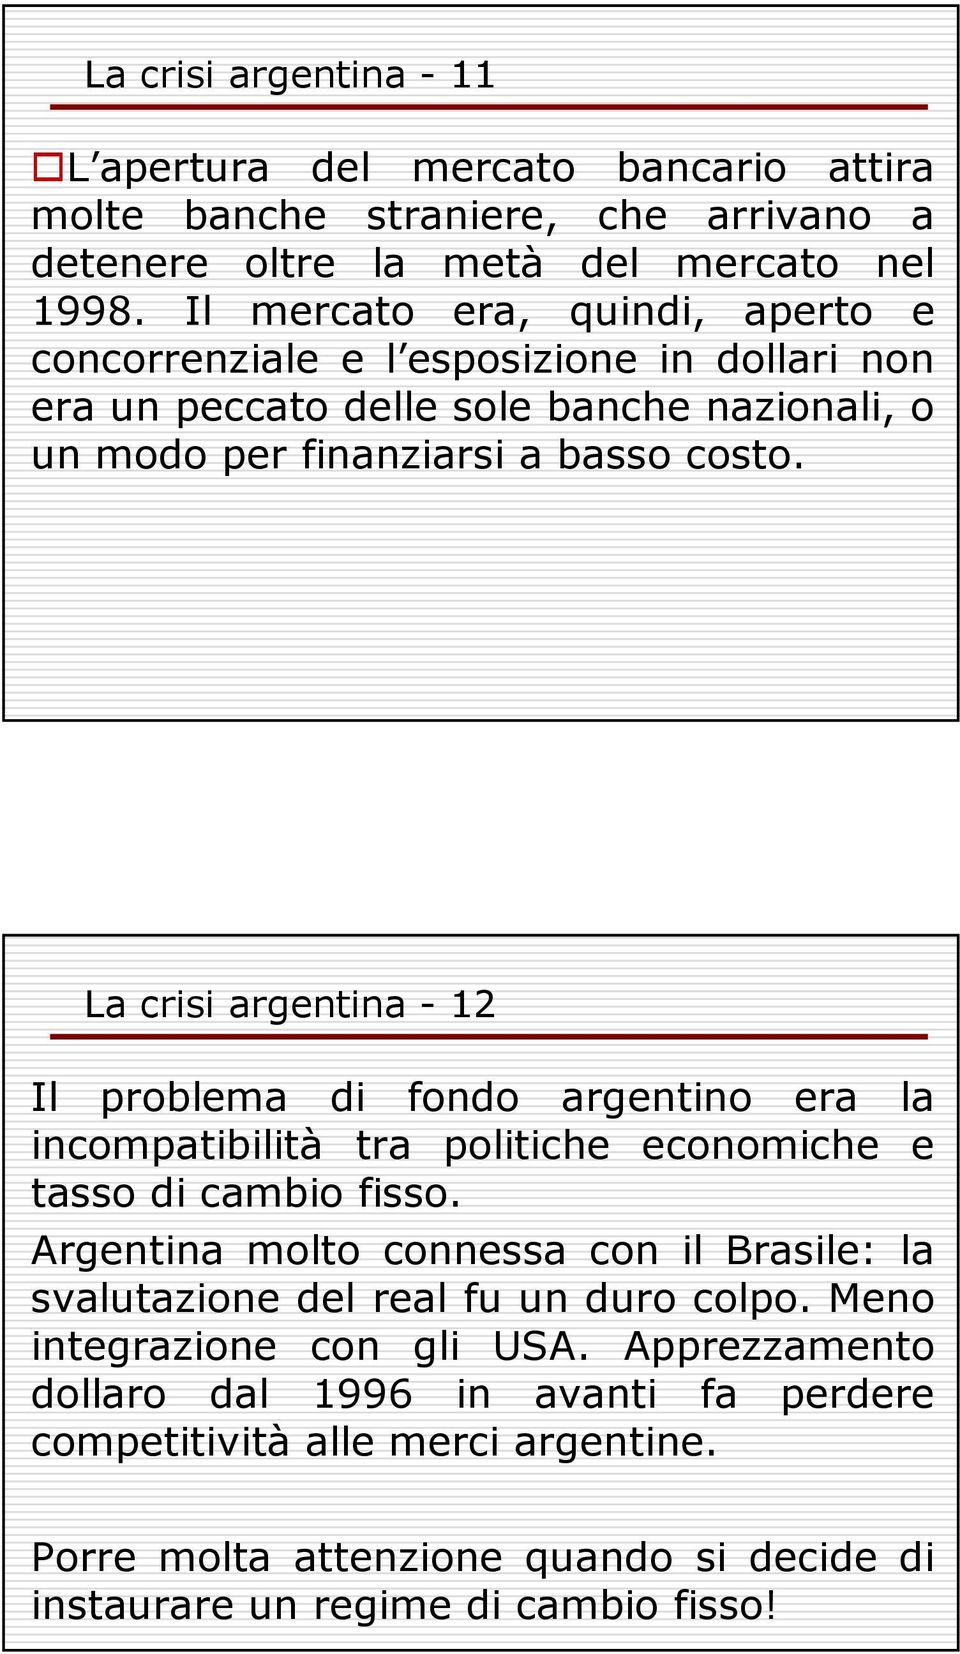 La crisi argentina - 12 Il problema di fondo argentino era la incompatibilità tra politiche economiche e tasso di cambio fisso.